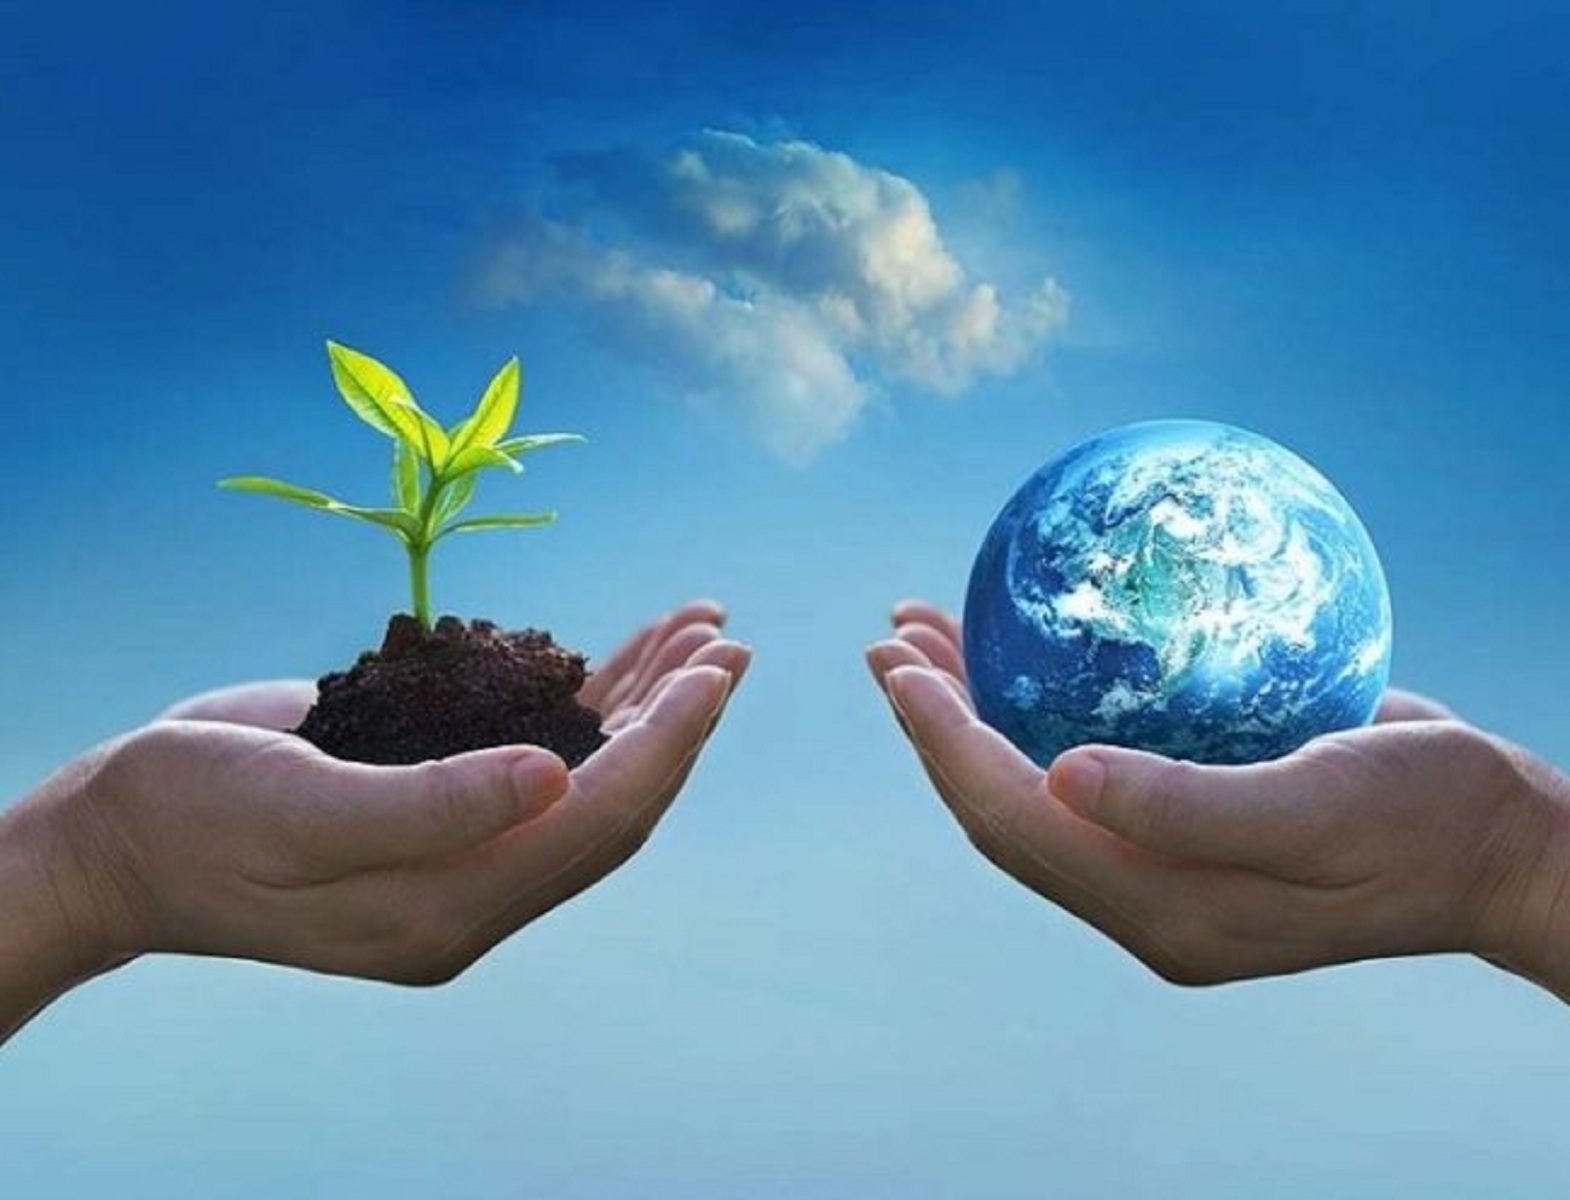 Παγκόσμια Ημέρα Περιβάλλοντος: "Είναι η ώρα της φύσης" - Το μήνυμα του  γενικού γραμματέα του ΟΗΕ | Ειδησεις | Pagenews.gr